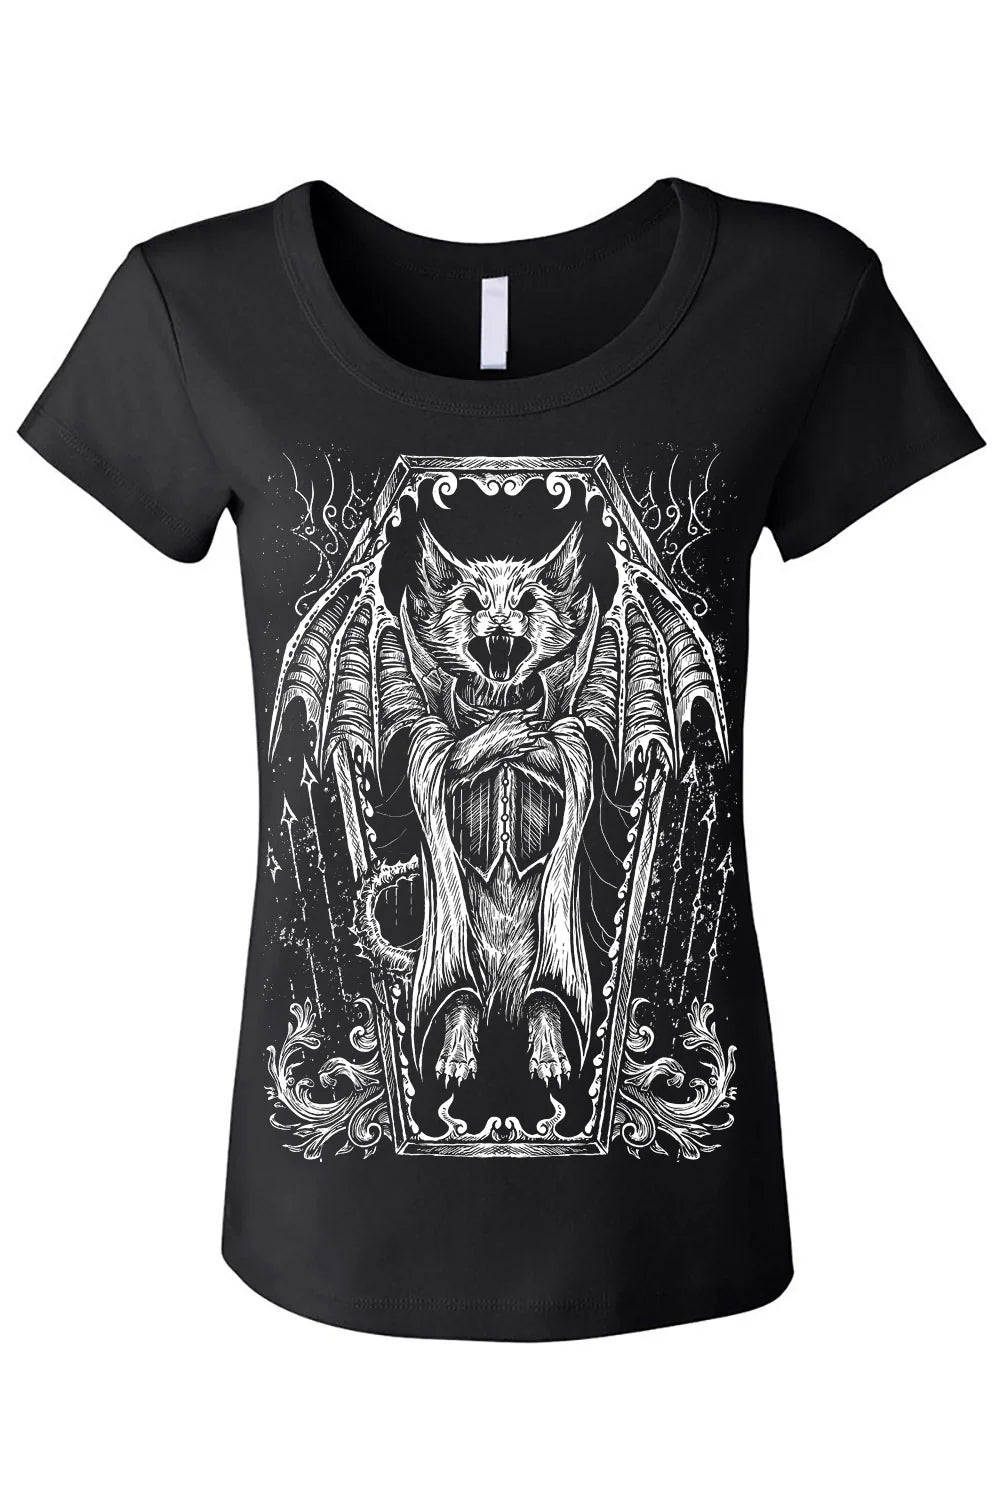 T-Shirt Vampire Kitty women